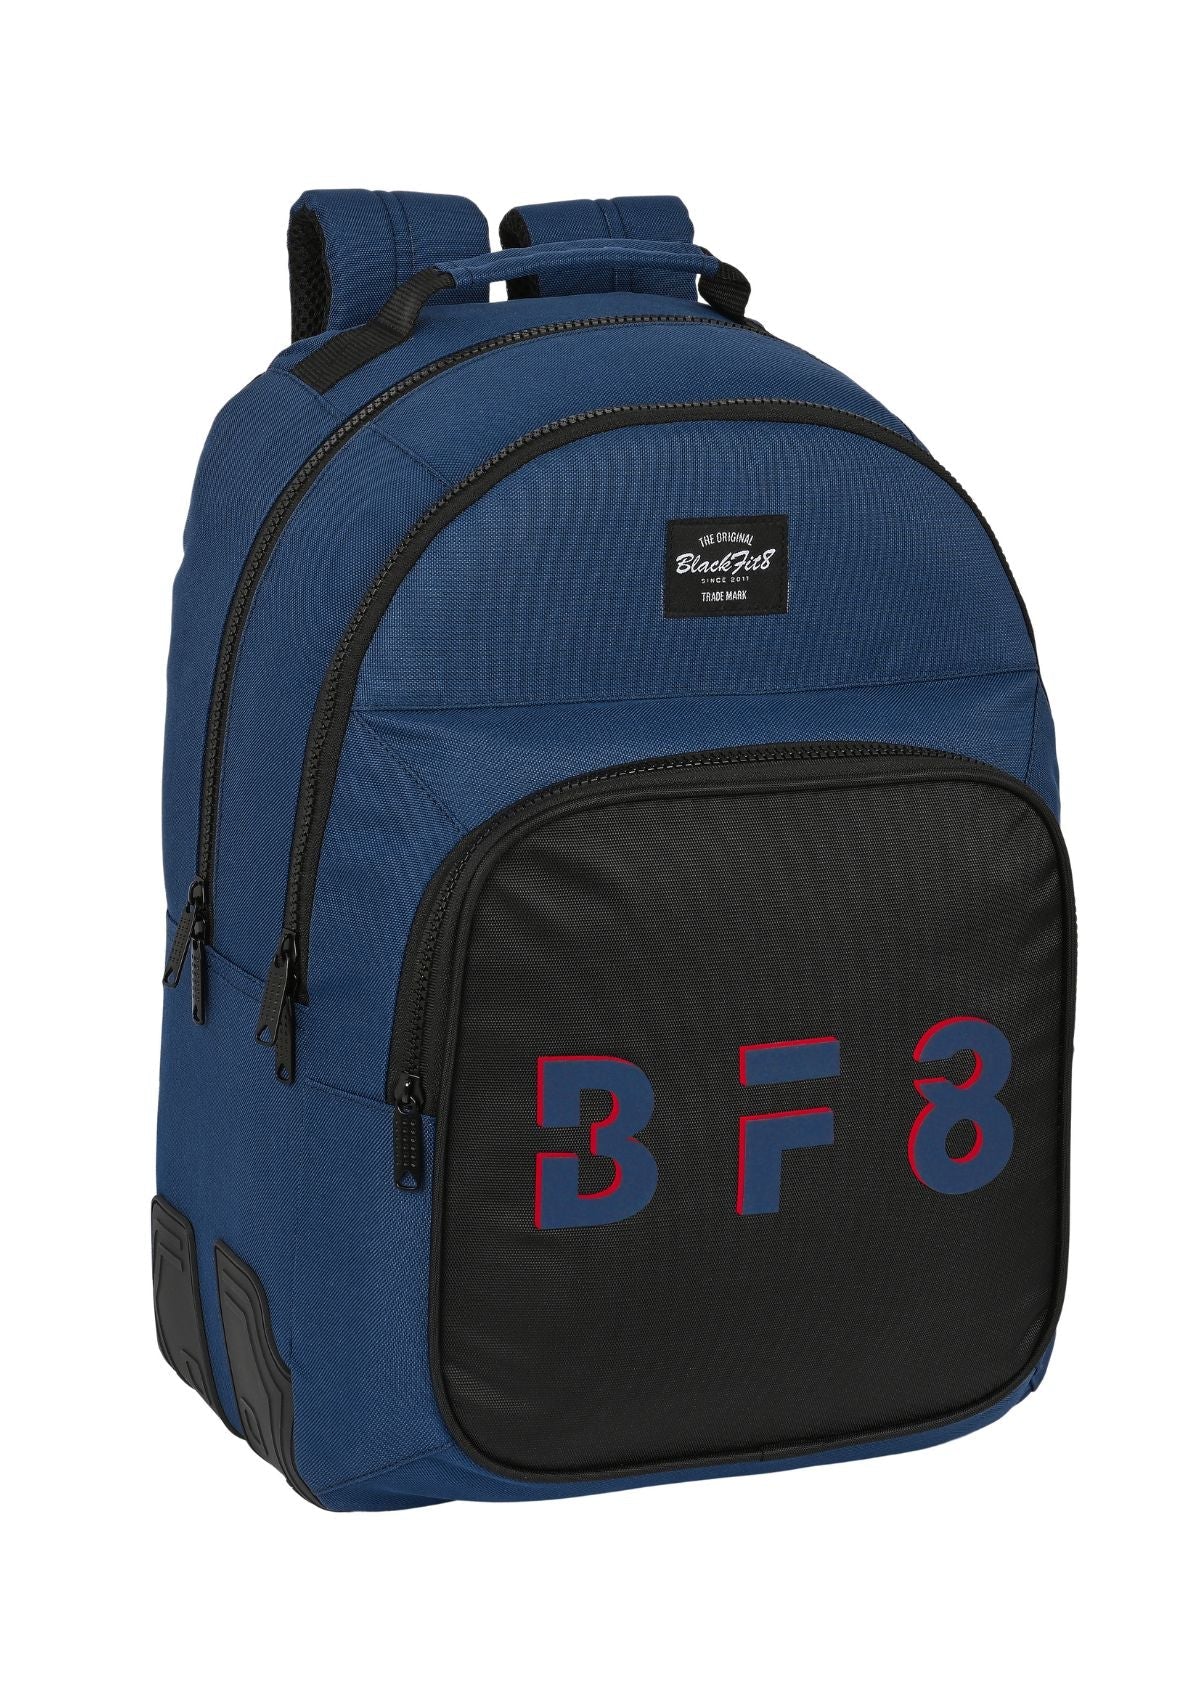 Safta Double Bagpack Blackfit8 Navy front